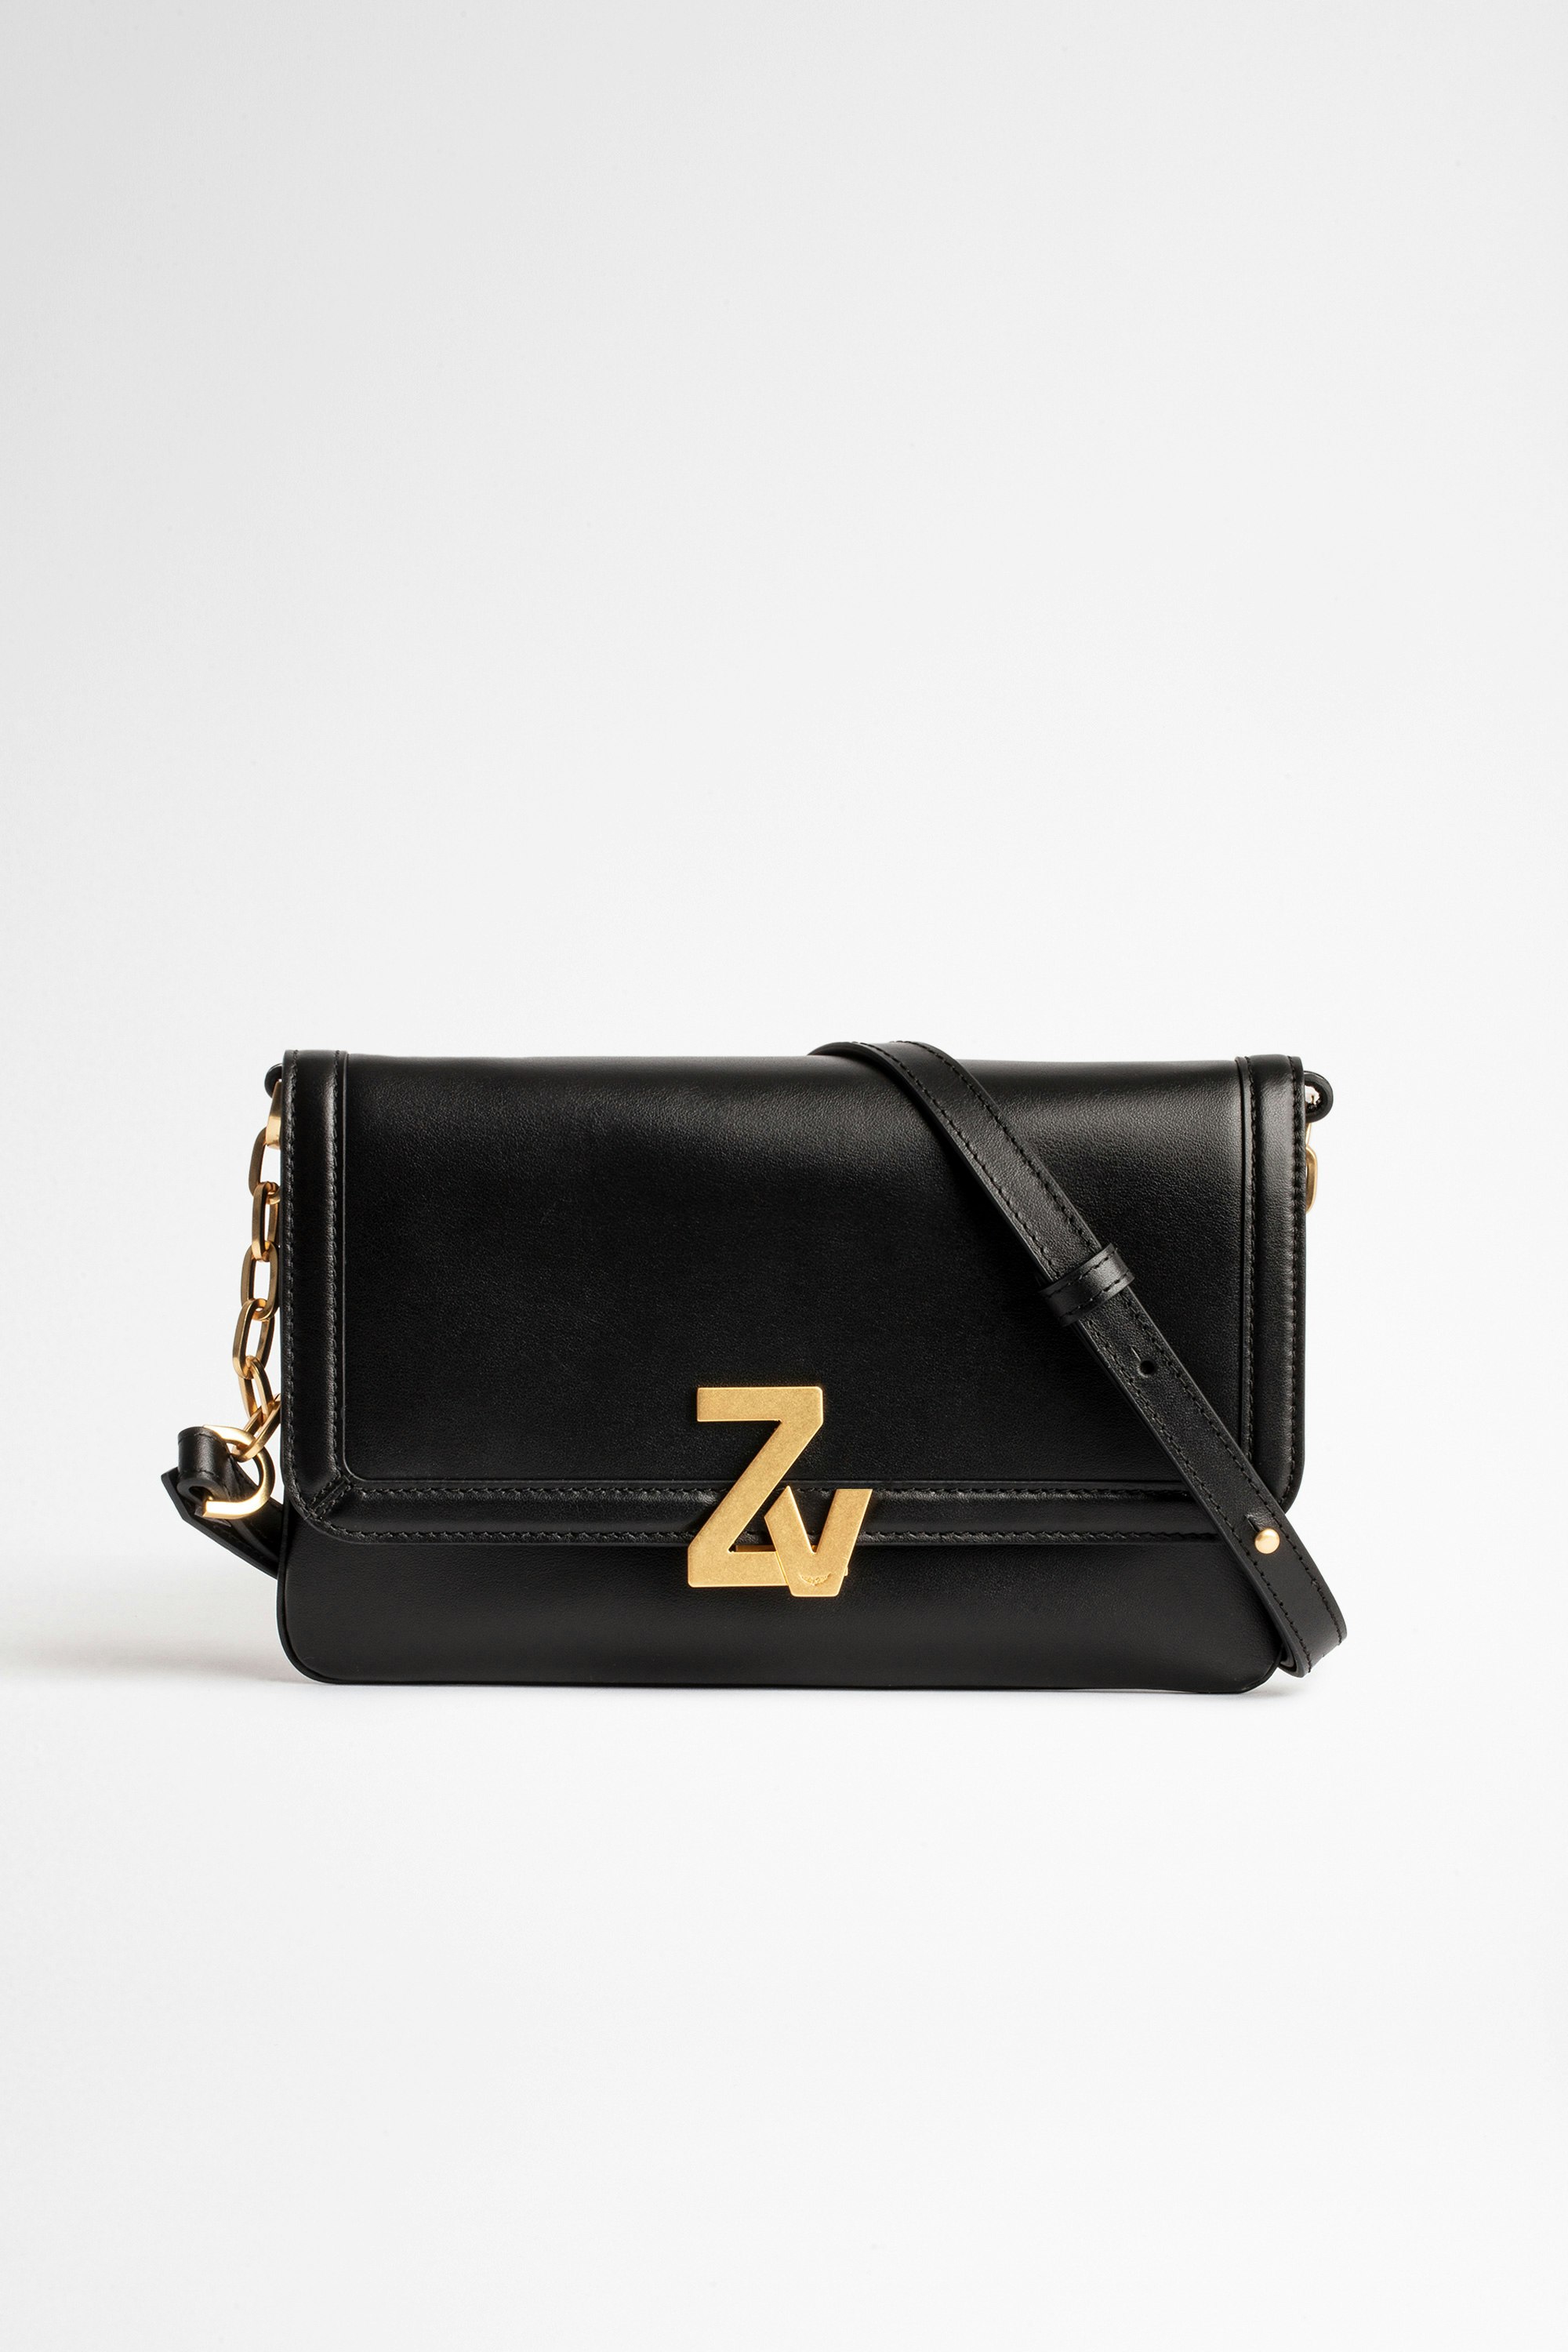 Tasche ZV Initiale La Clutch Damen-Clutch aus Glattleder mit ZV-Monogramm